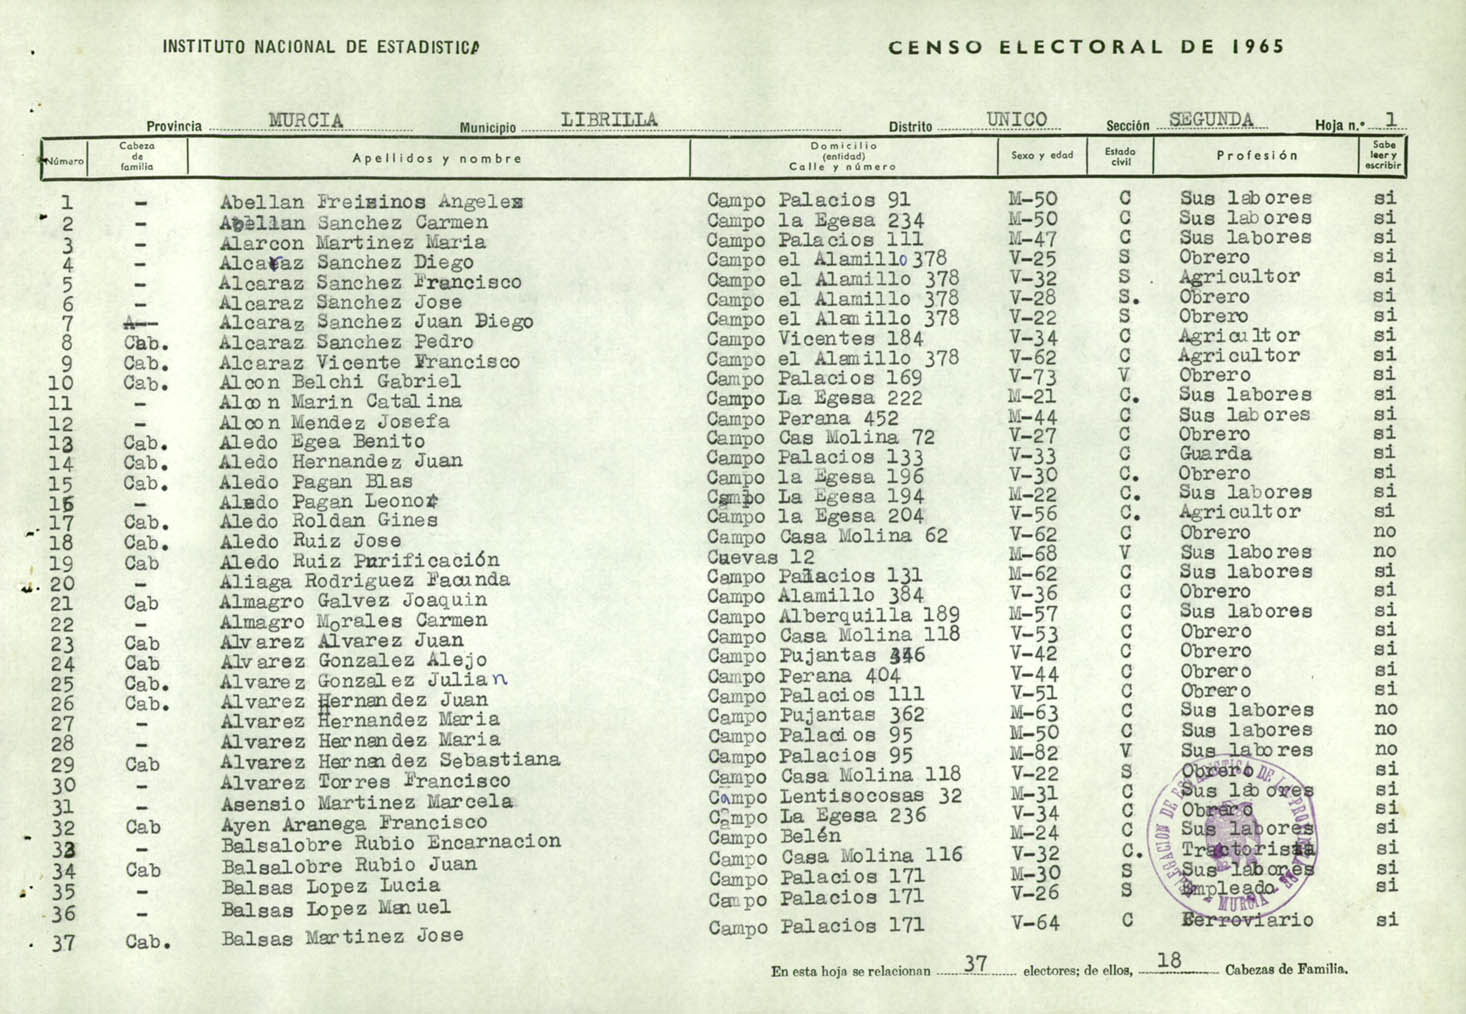 Censo electoral provincial de 1965: listas definitivas de Librilla, Distrito Único, sección 2ª.